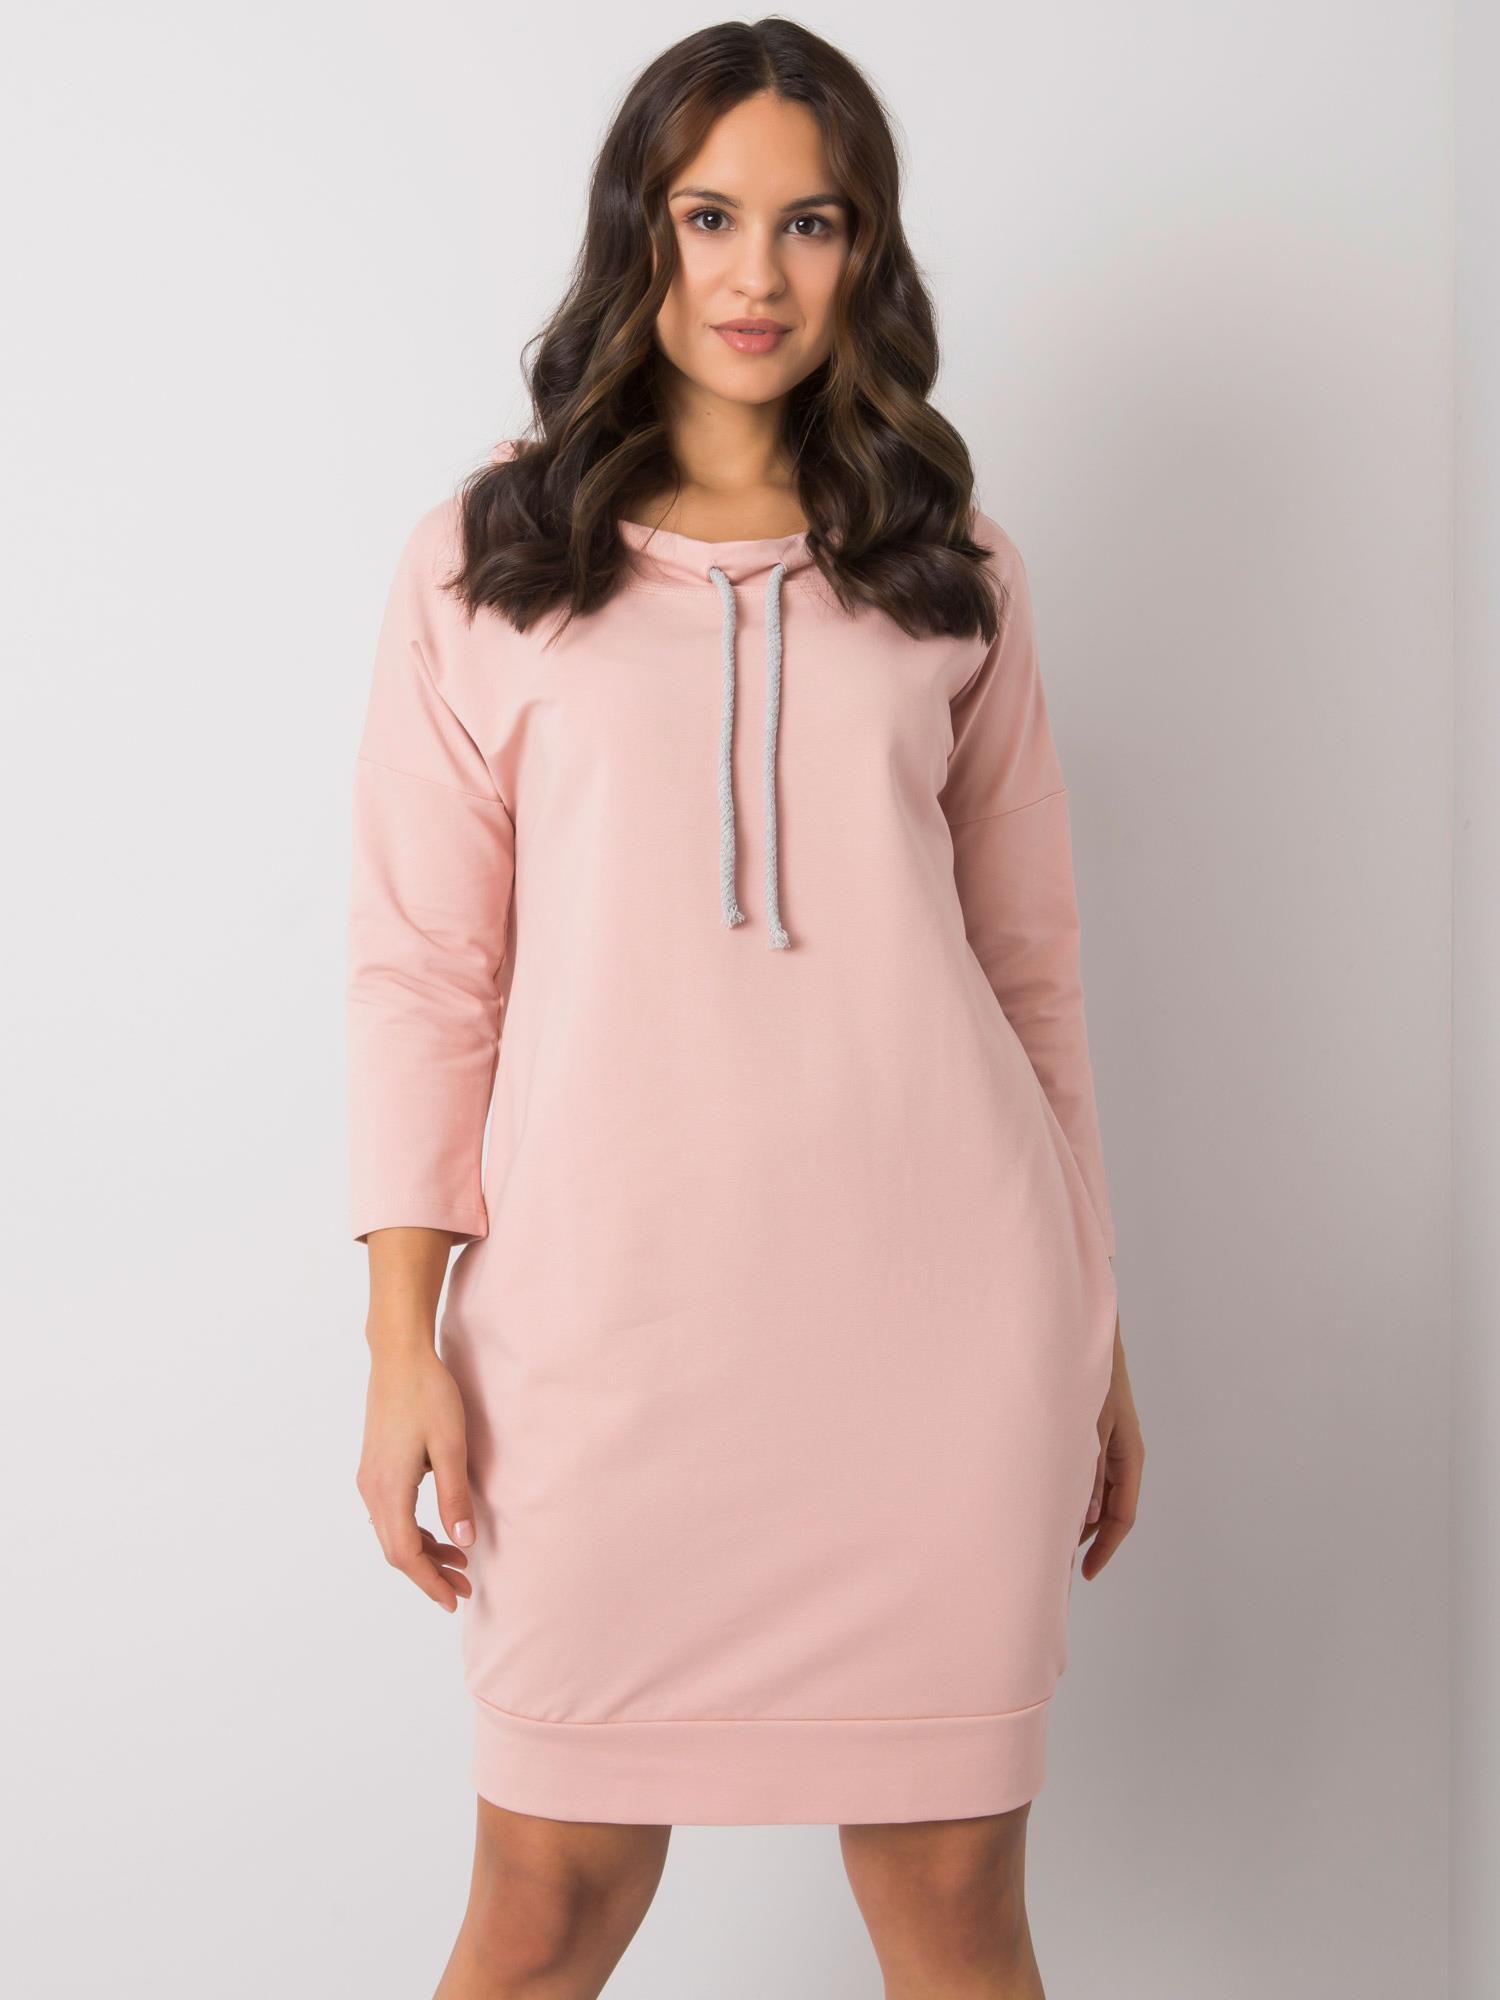 Světle růžové dámské mikinové šaty s kapsami RV-SK-4597-1.97-pink Velikost: L/XL